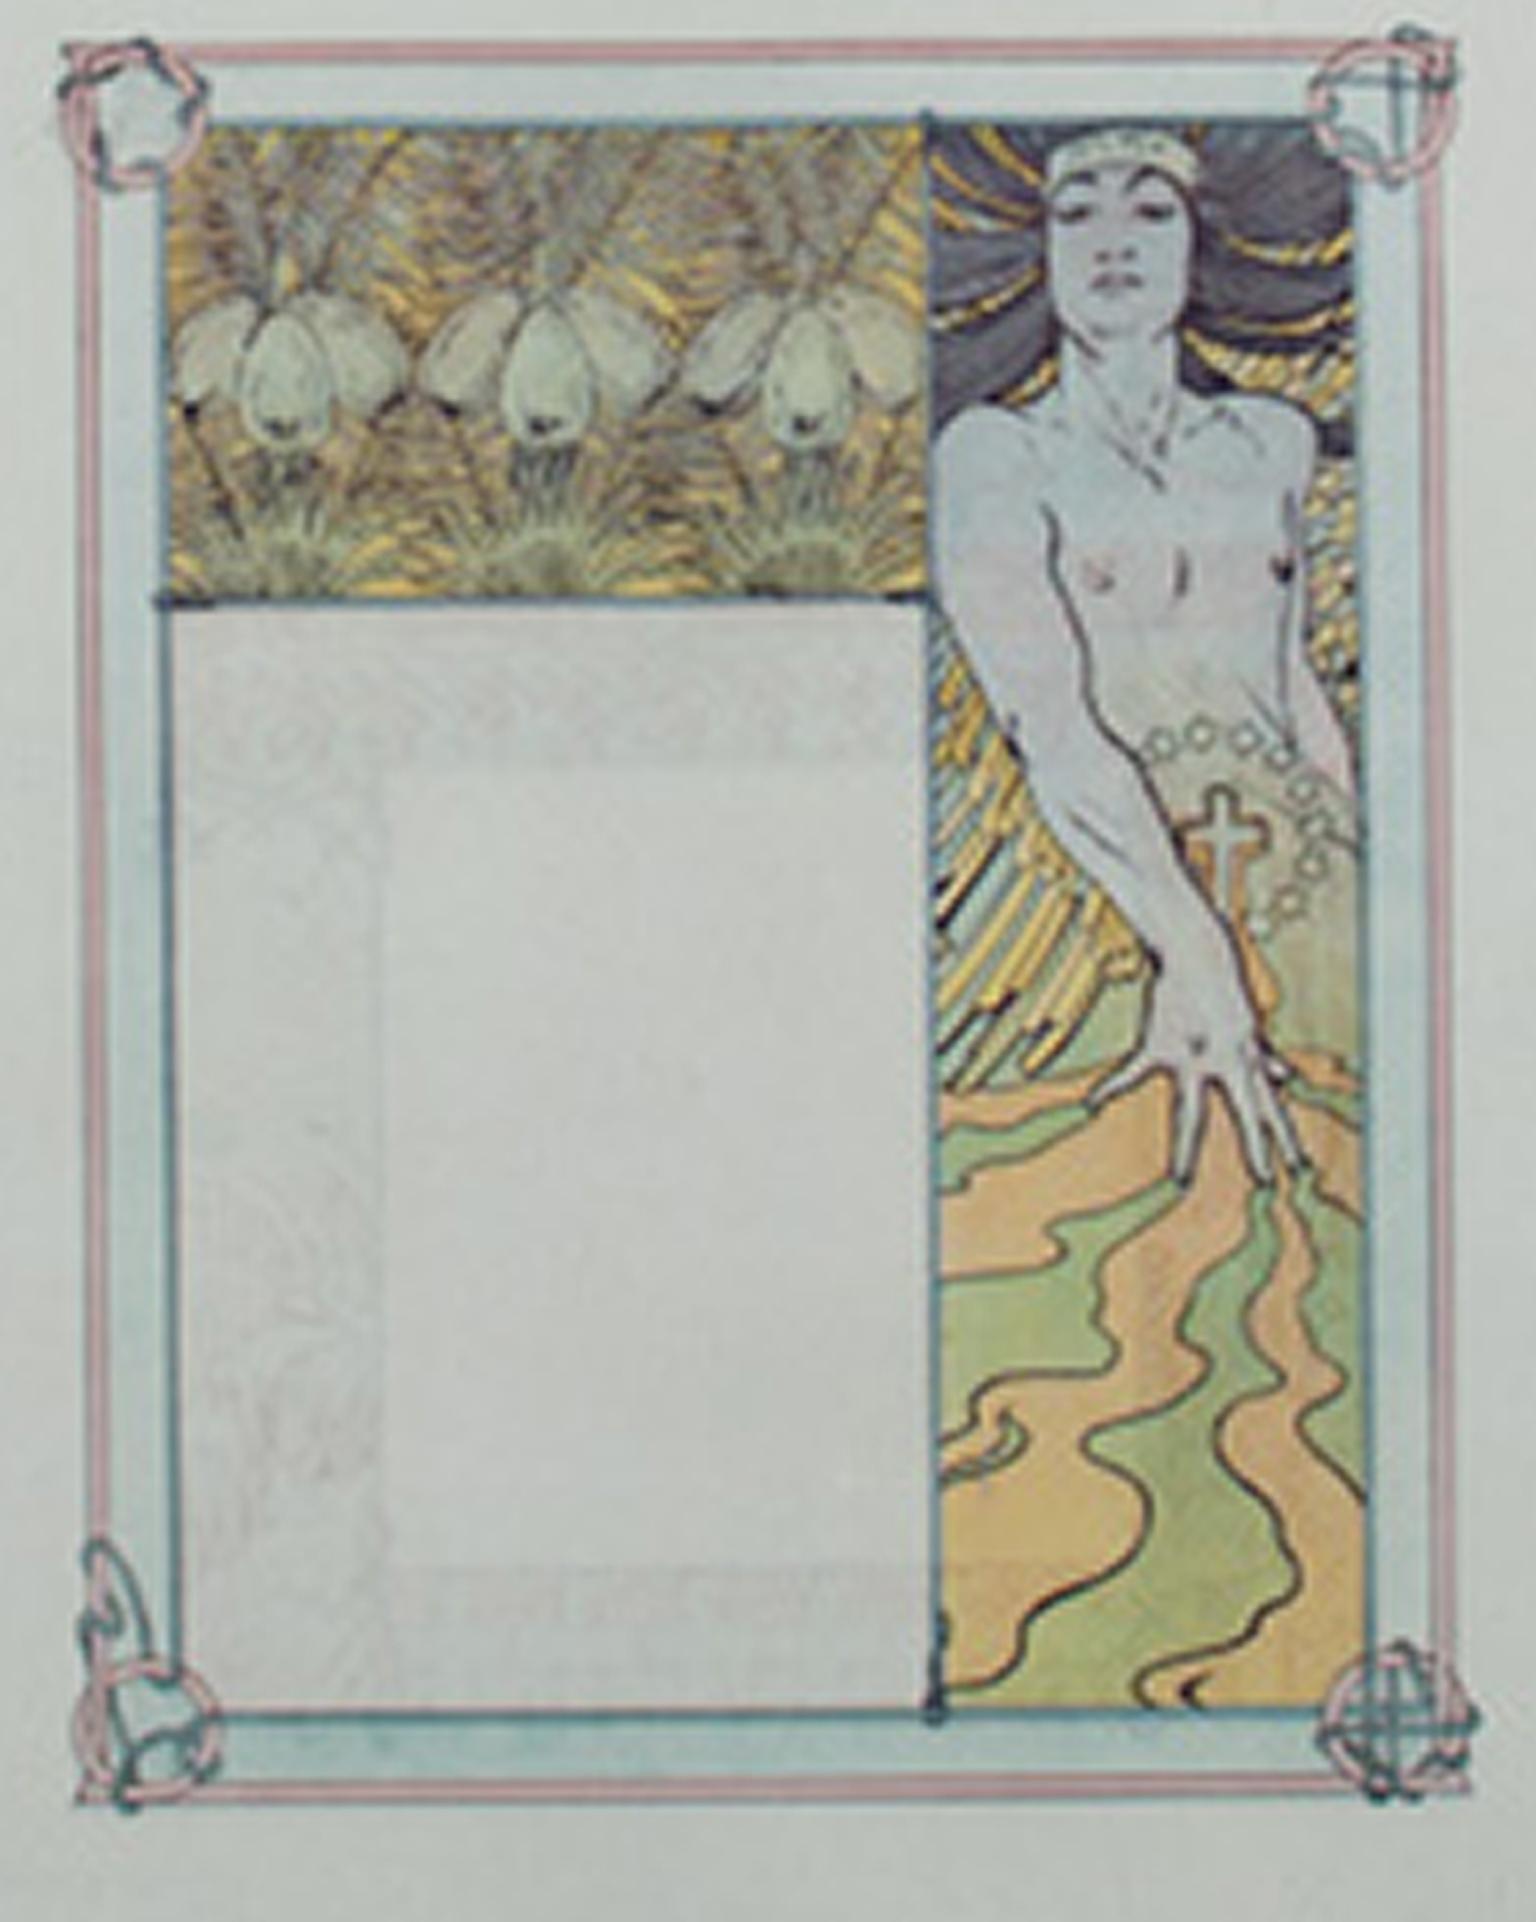 Farblithographie des späten 19. Jahrhunderts, Art nouveau-Bücherregal mit Blumenfigur, Jugendstil – Print von Alphonse Mucha